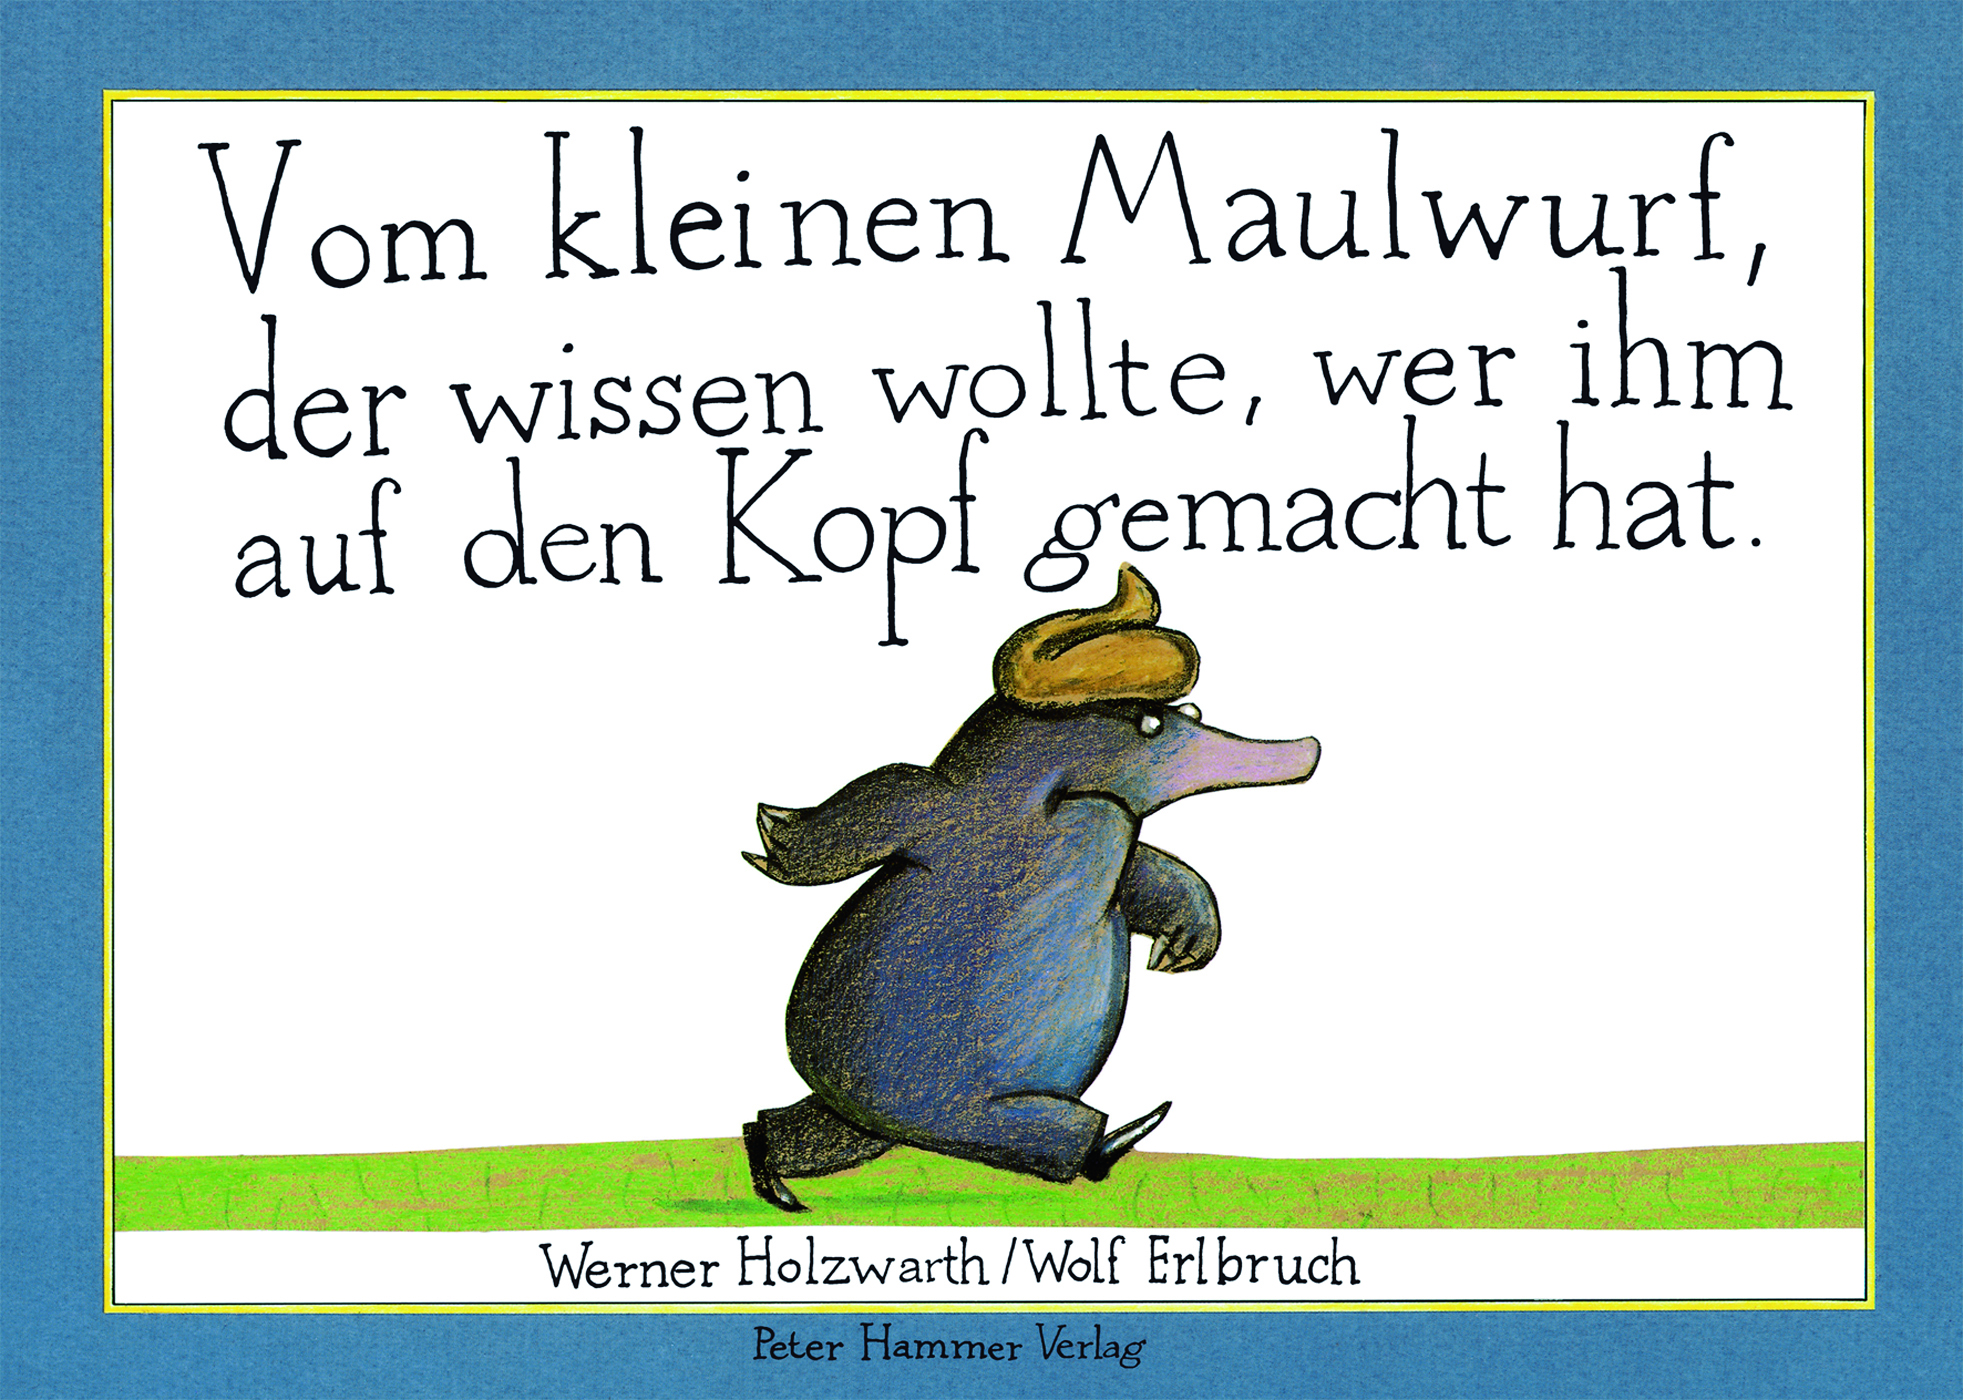 Buchcover: Vom kleinen Maulwurf, der wissen wollte, wer ihm auf den Kopf gemacht hat von Werner Holzwarth. Zum Thema: Kinderbuchklassiker